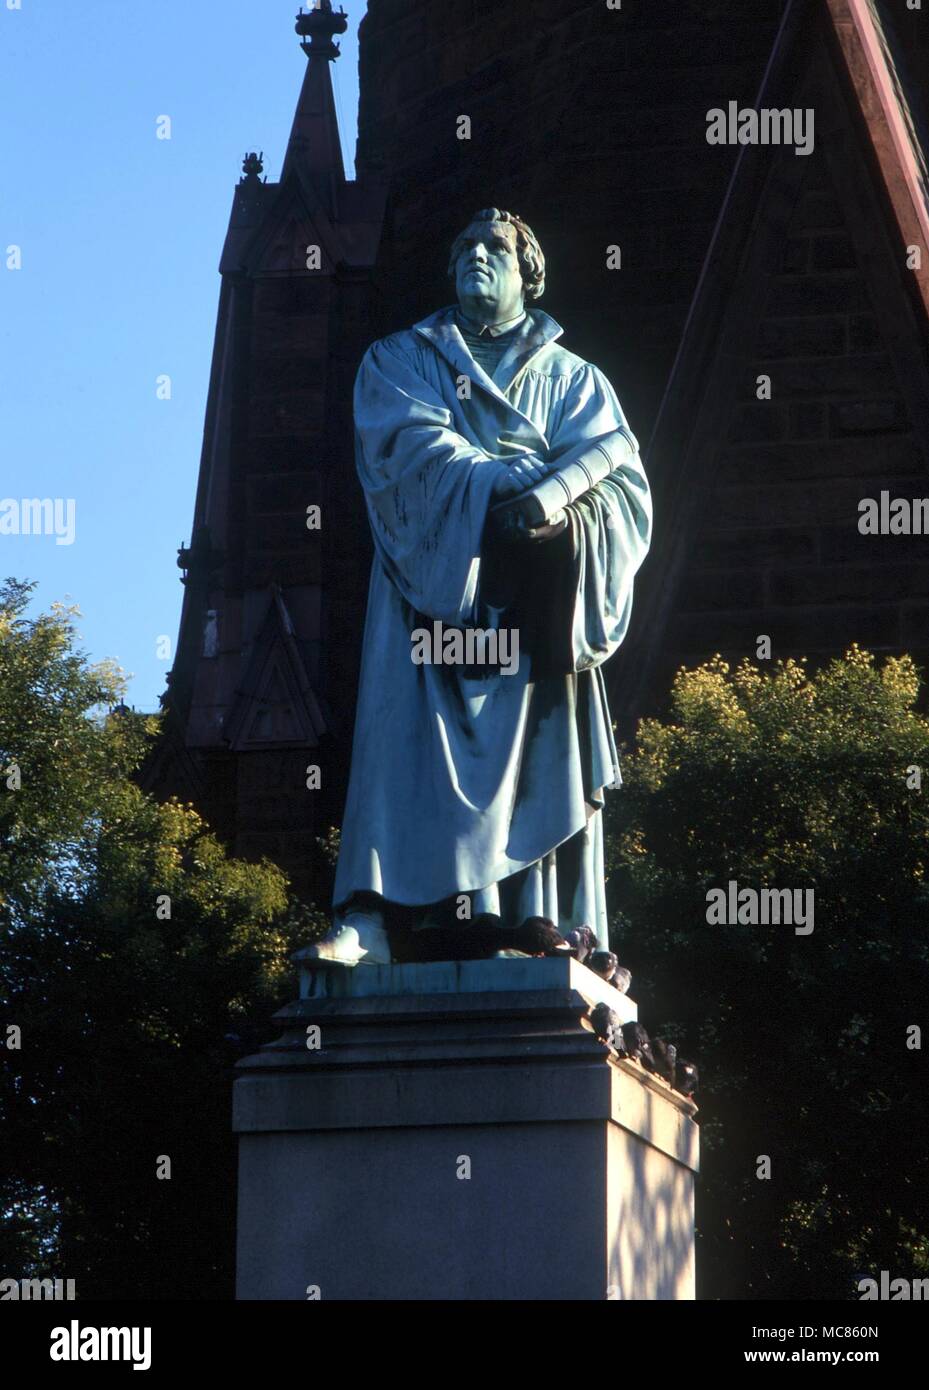 CHRISTIAN UN 12 pieds de statue en bronze de Martin Luther - copie de la sculpture par Reitschel. Érigée pour commémorer le 400e anniversaire de la naissance du réformateur protestant. Thomas Circle, Washington DC Banque D'Images